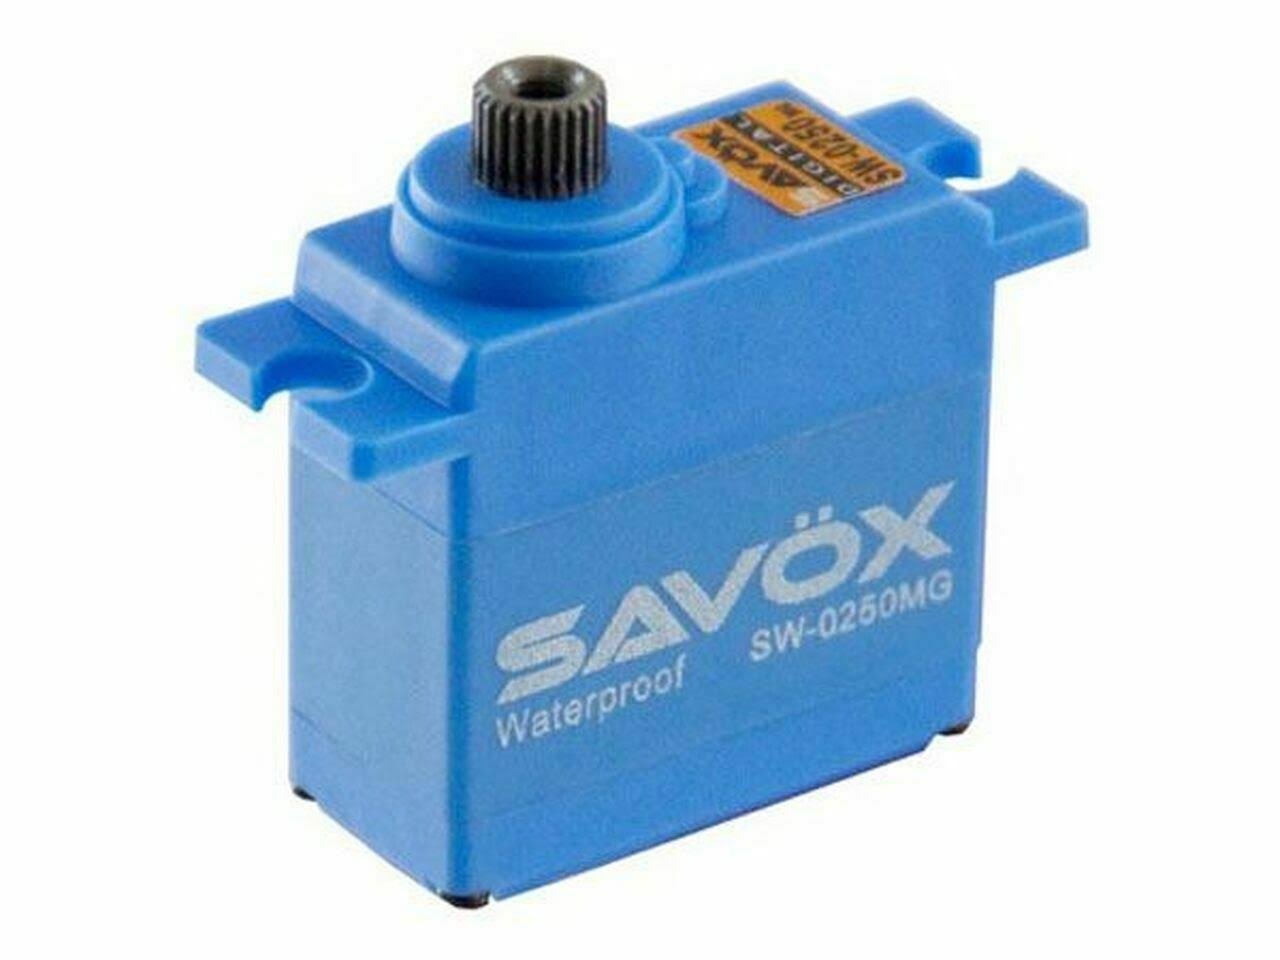 Savox Waterproof Digital Metal Gear Micro Servo